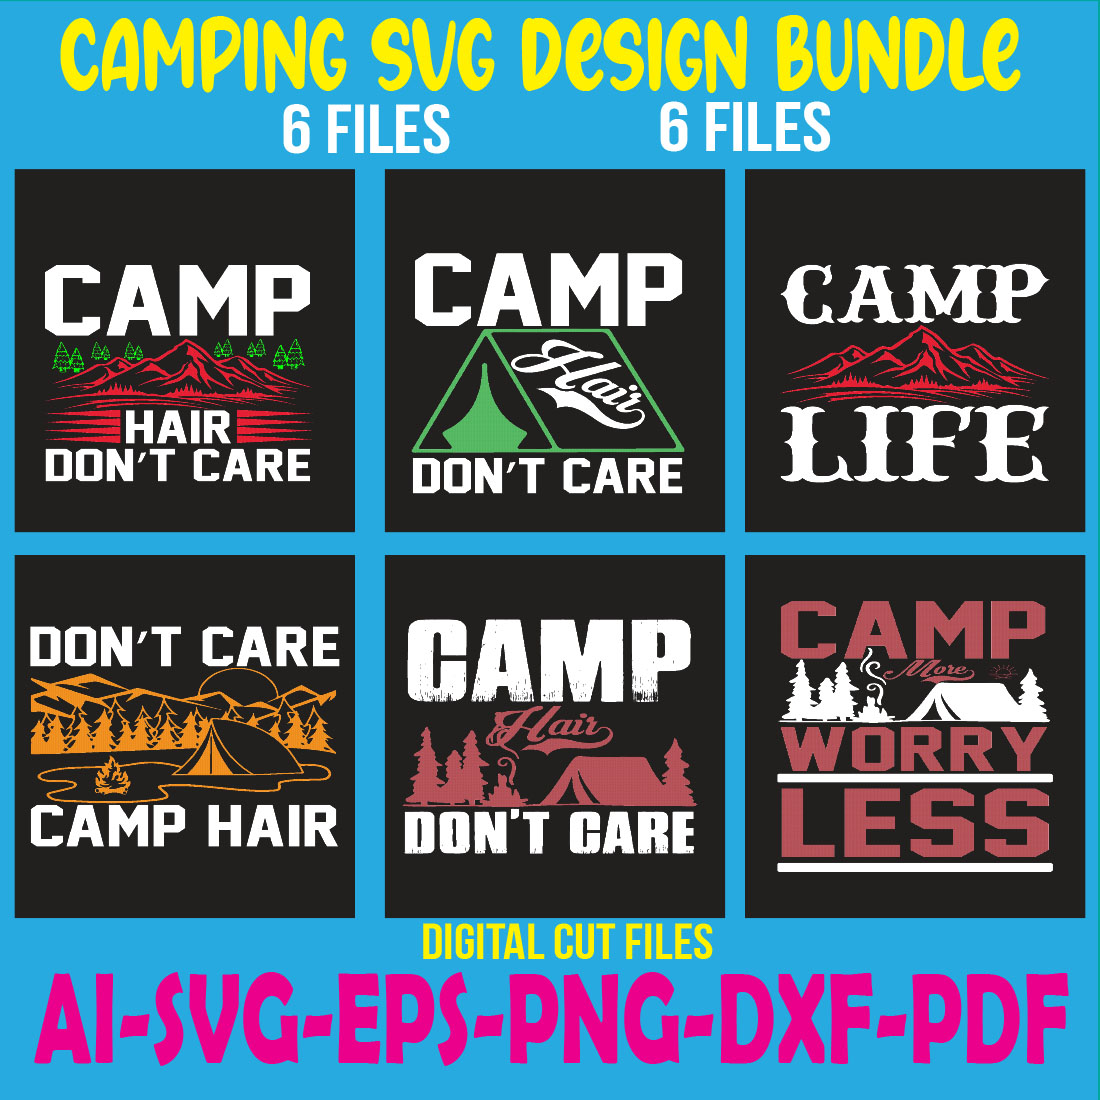 Camping SVG Design Bundle cover image.